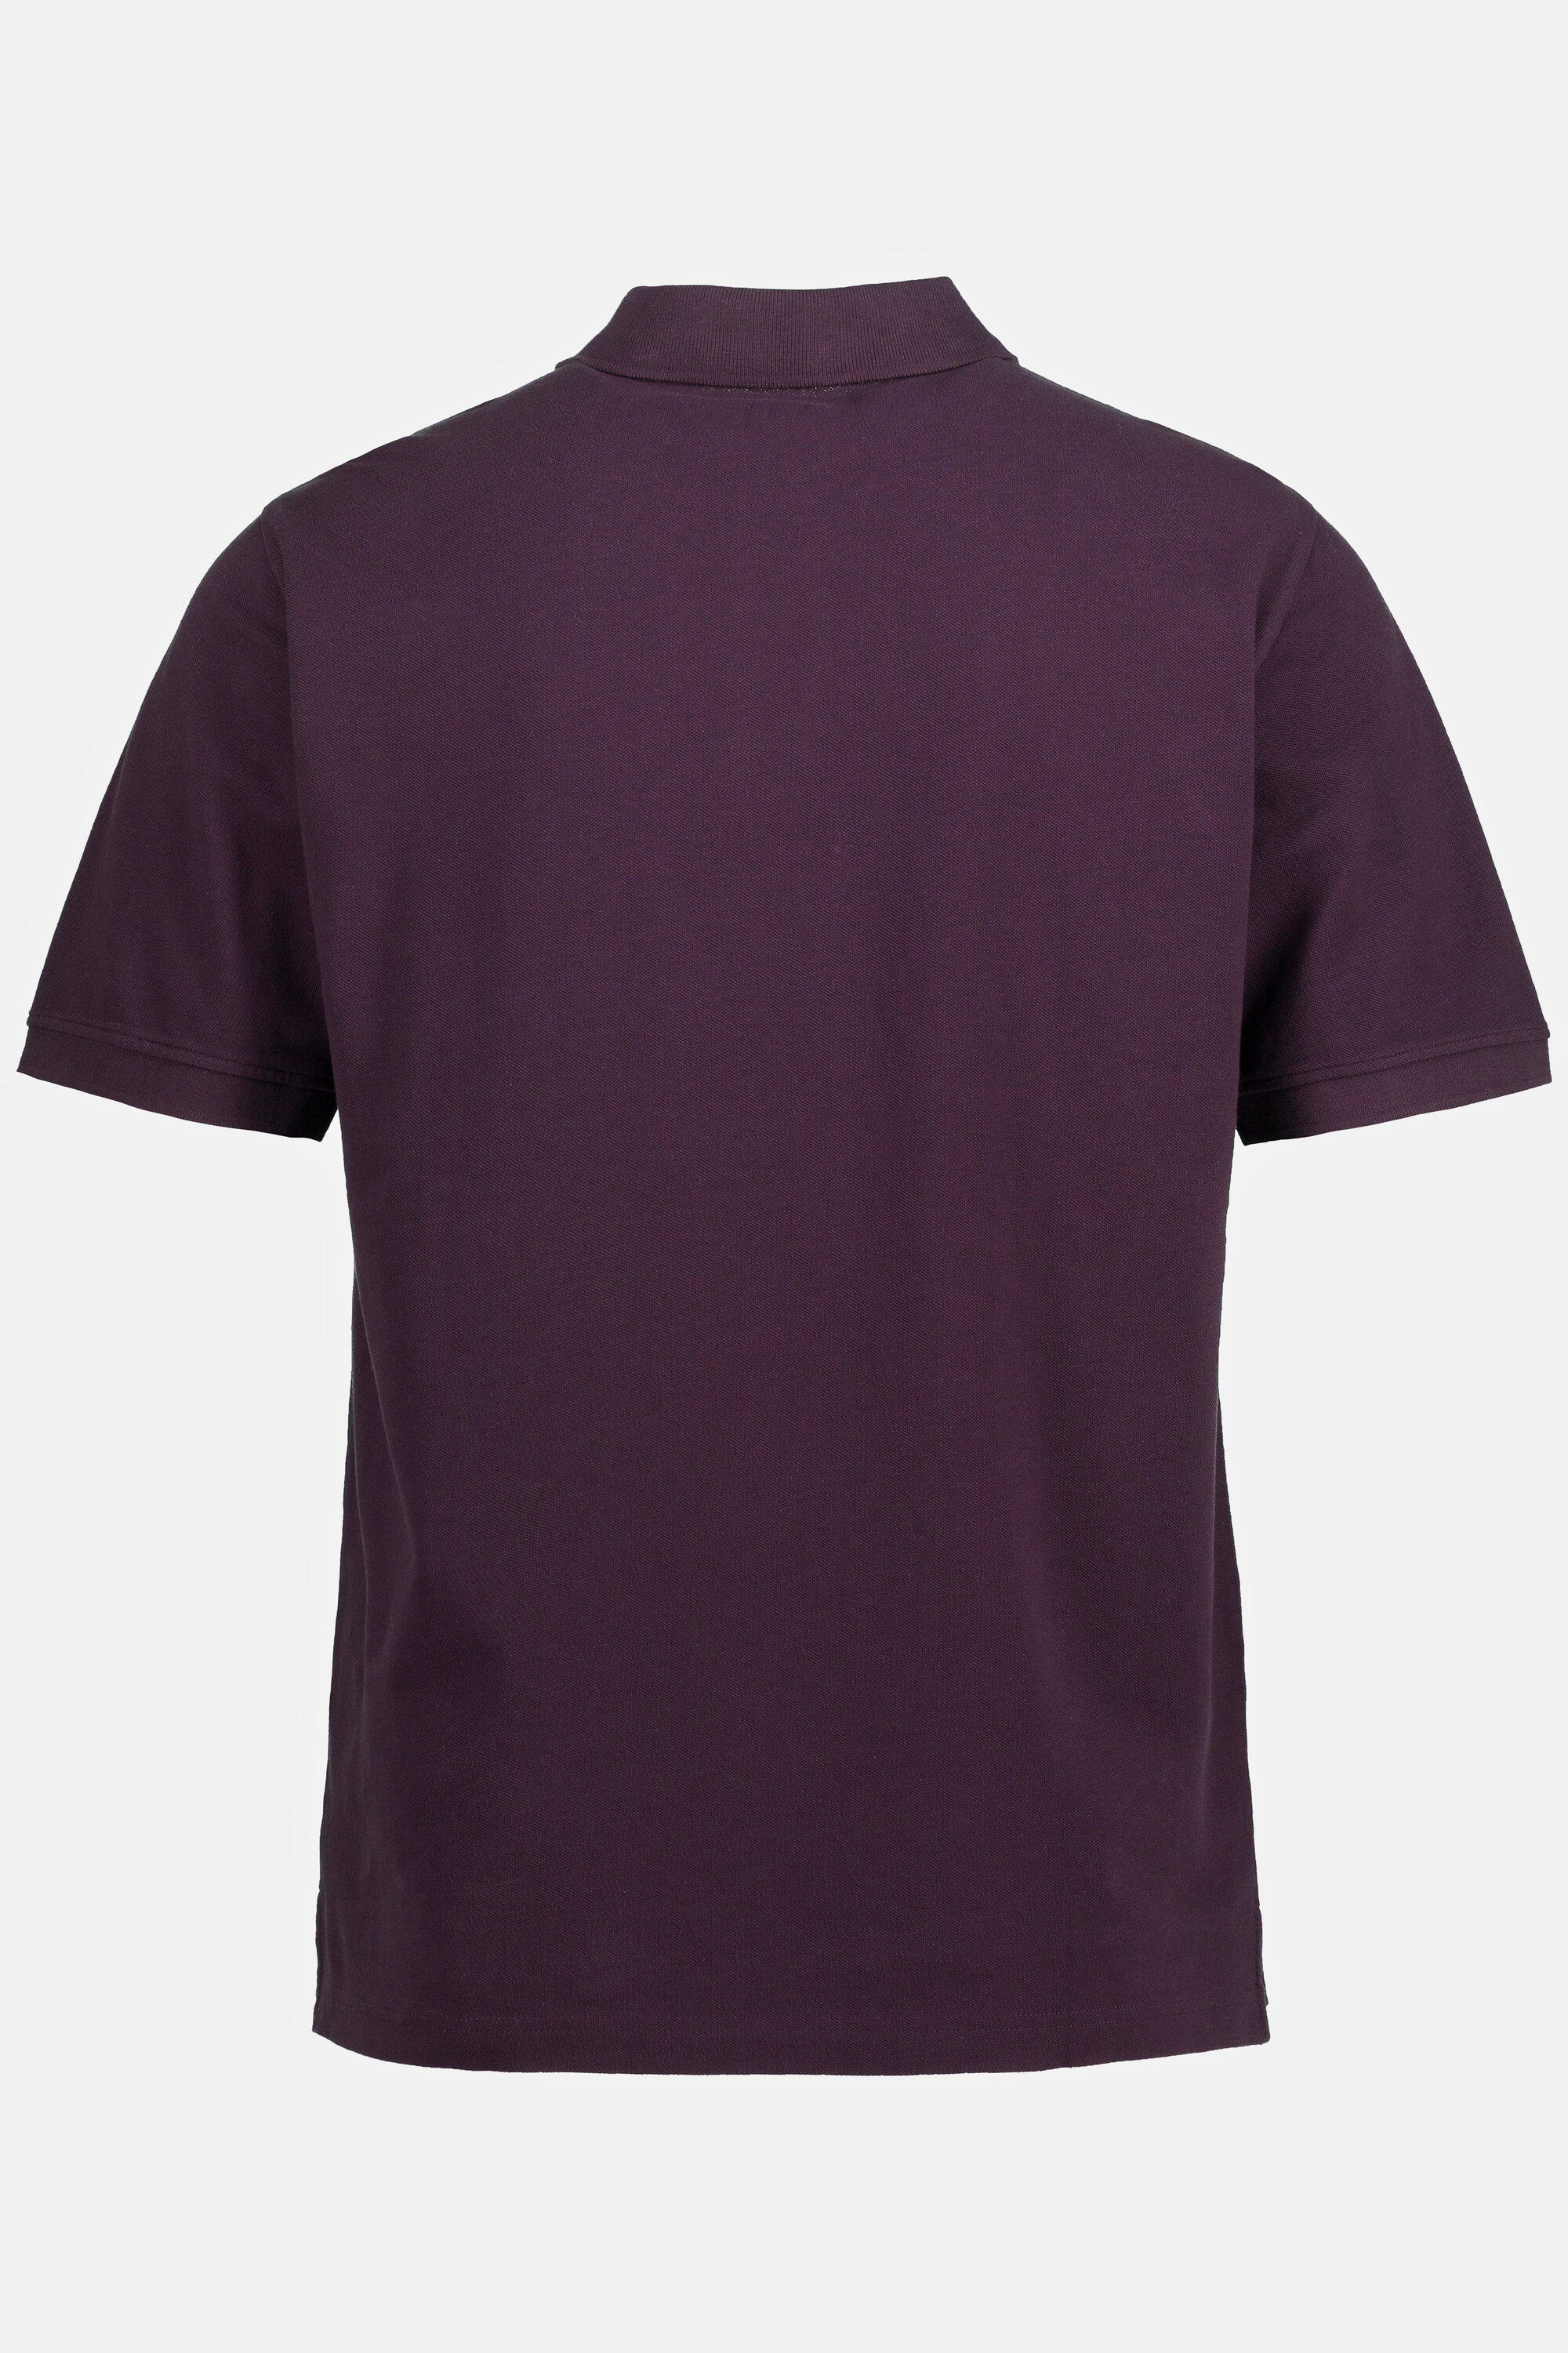 JP1880 Poloshirt Poloshirt Basic Halbarm violett 10XL dunkel Piqué bis